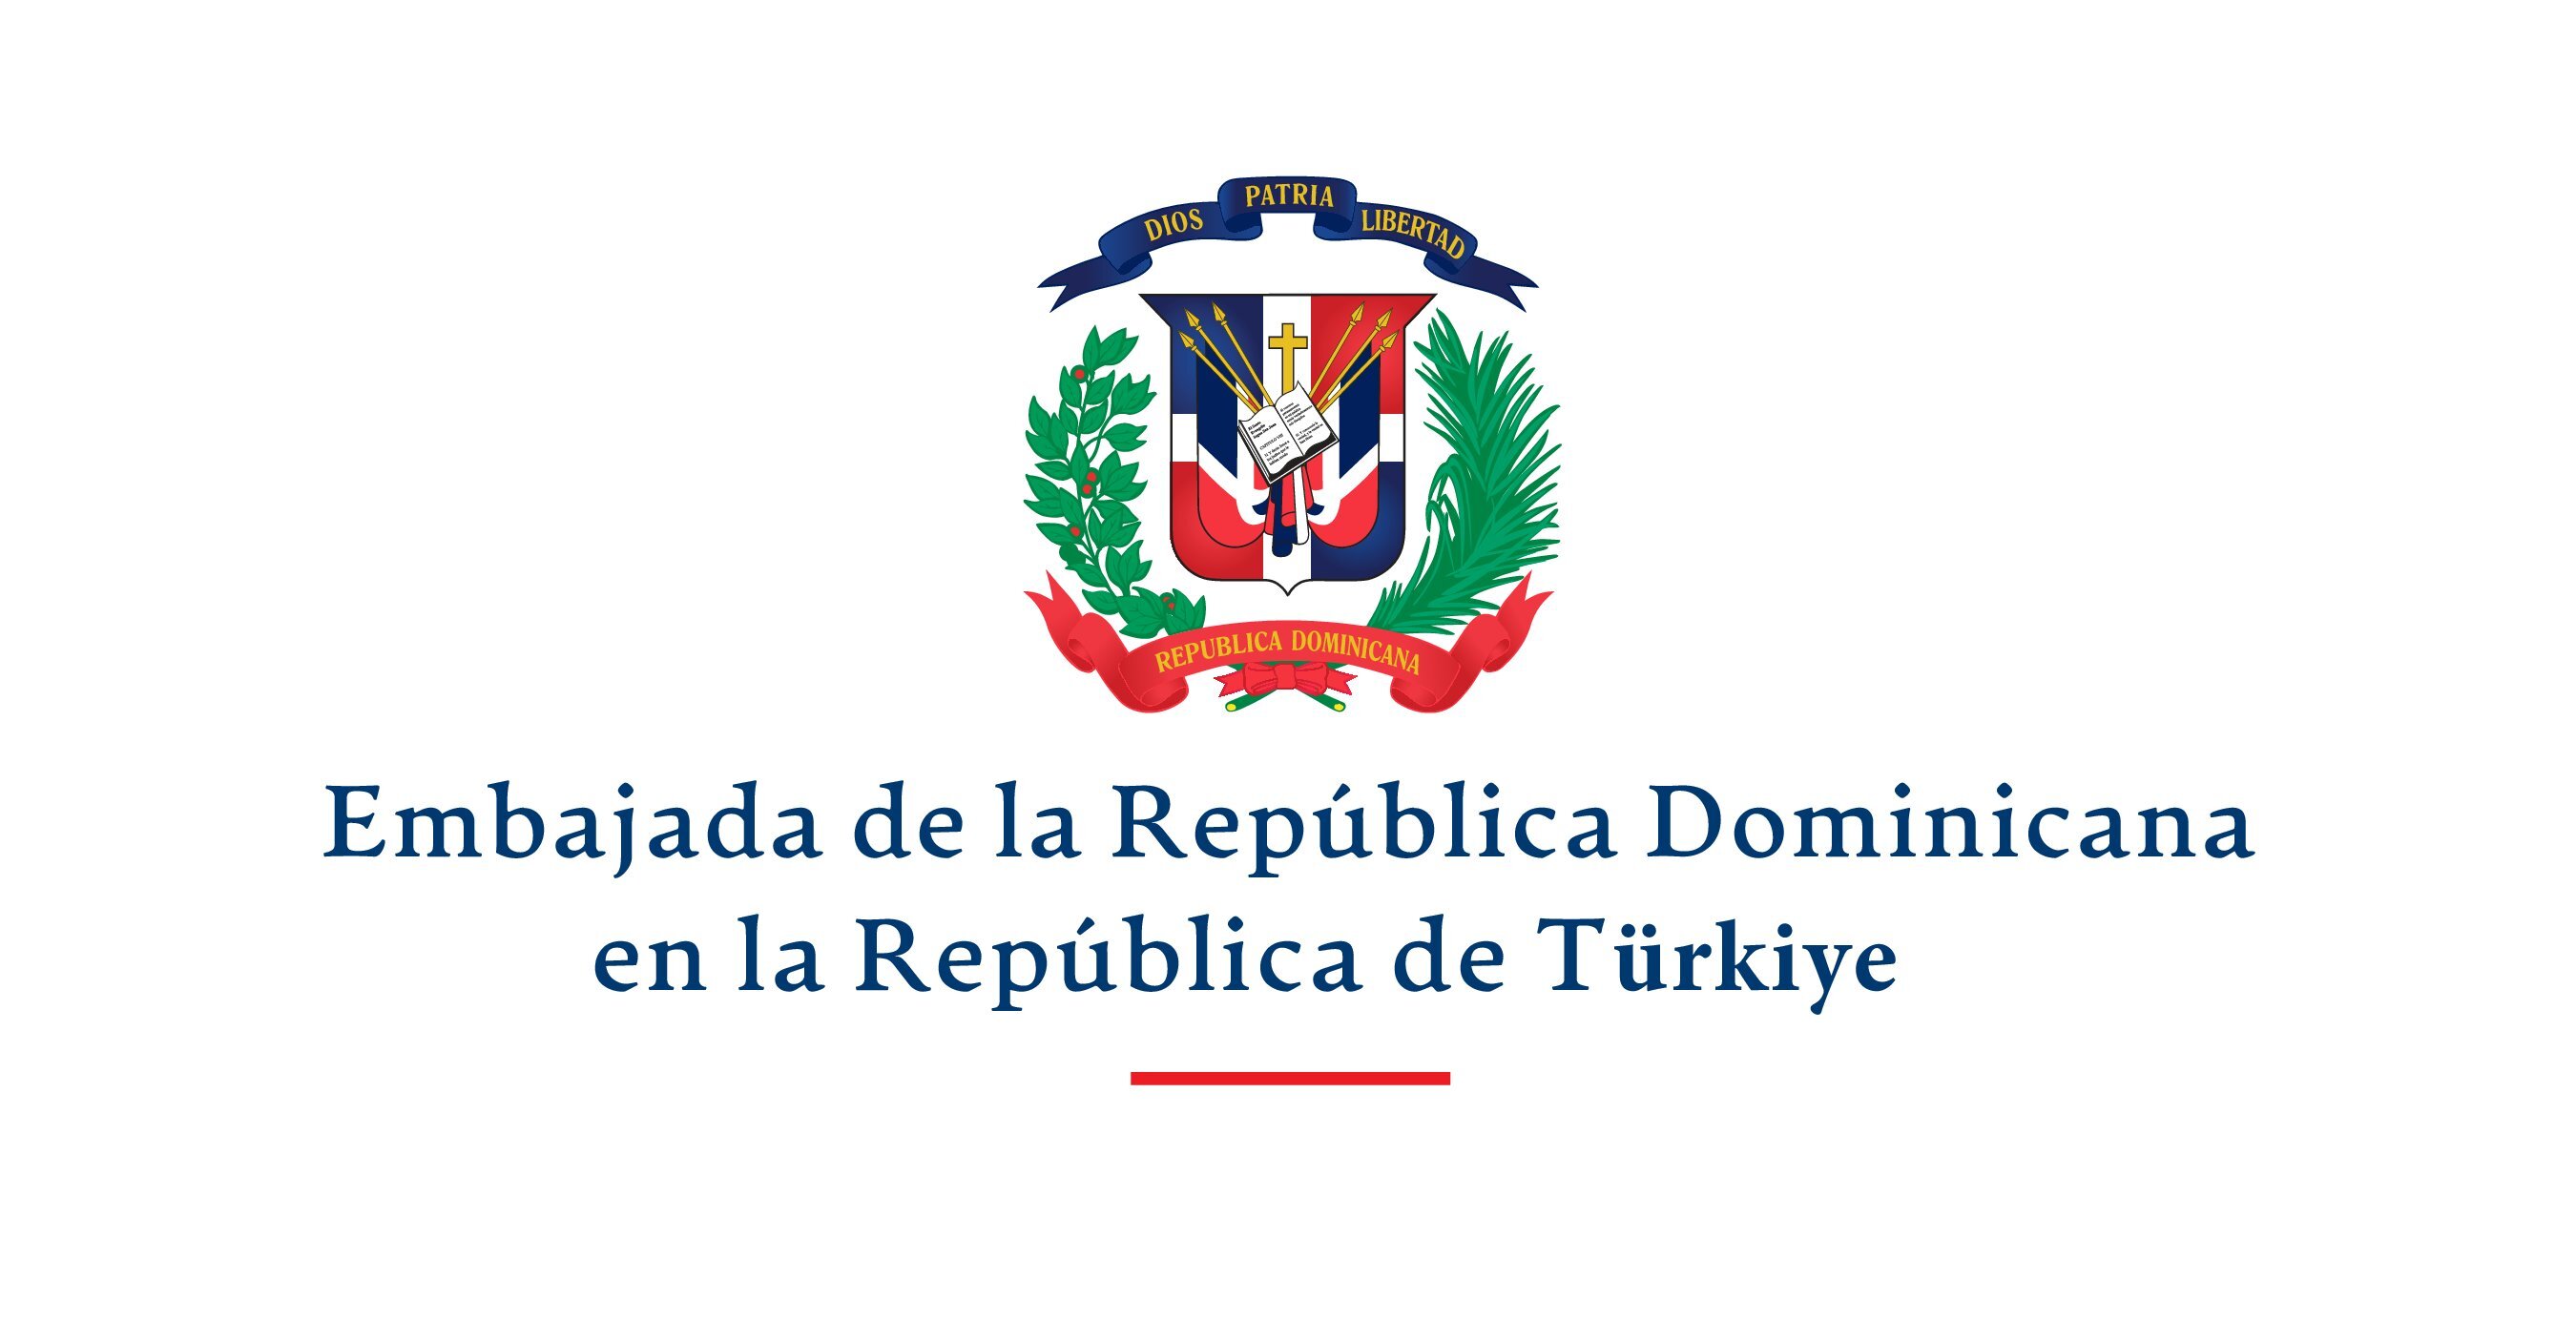 Embajada de la República Dominicana (Turquía)